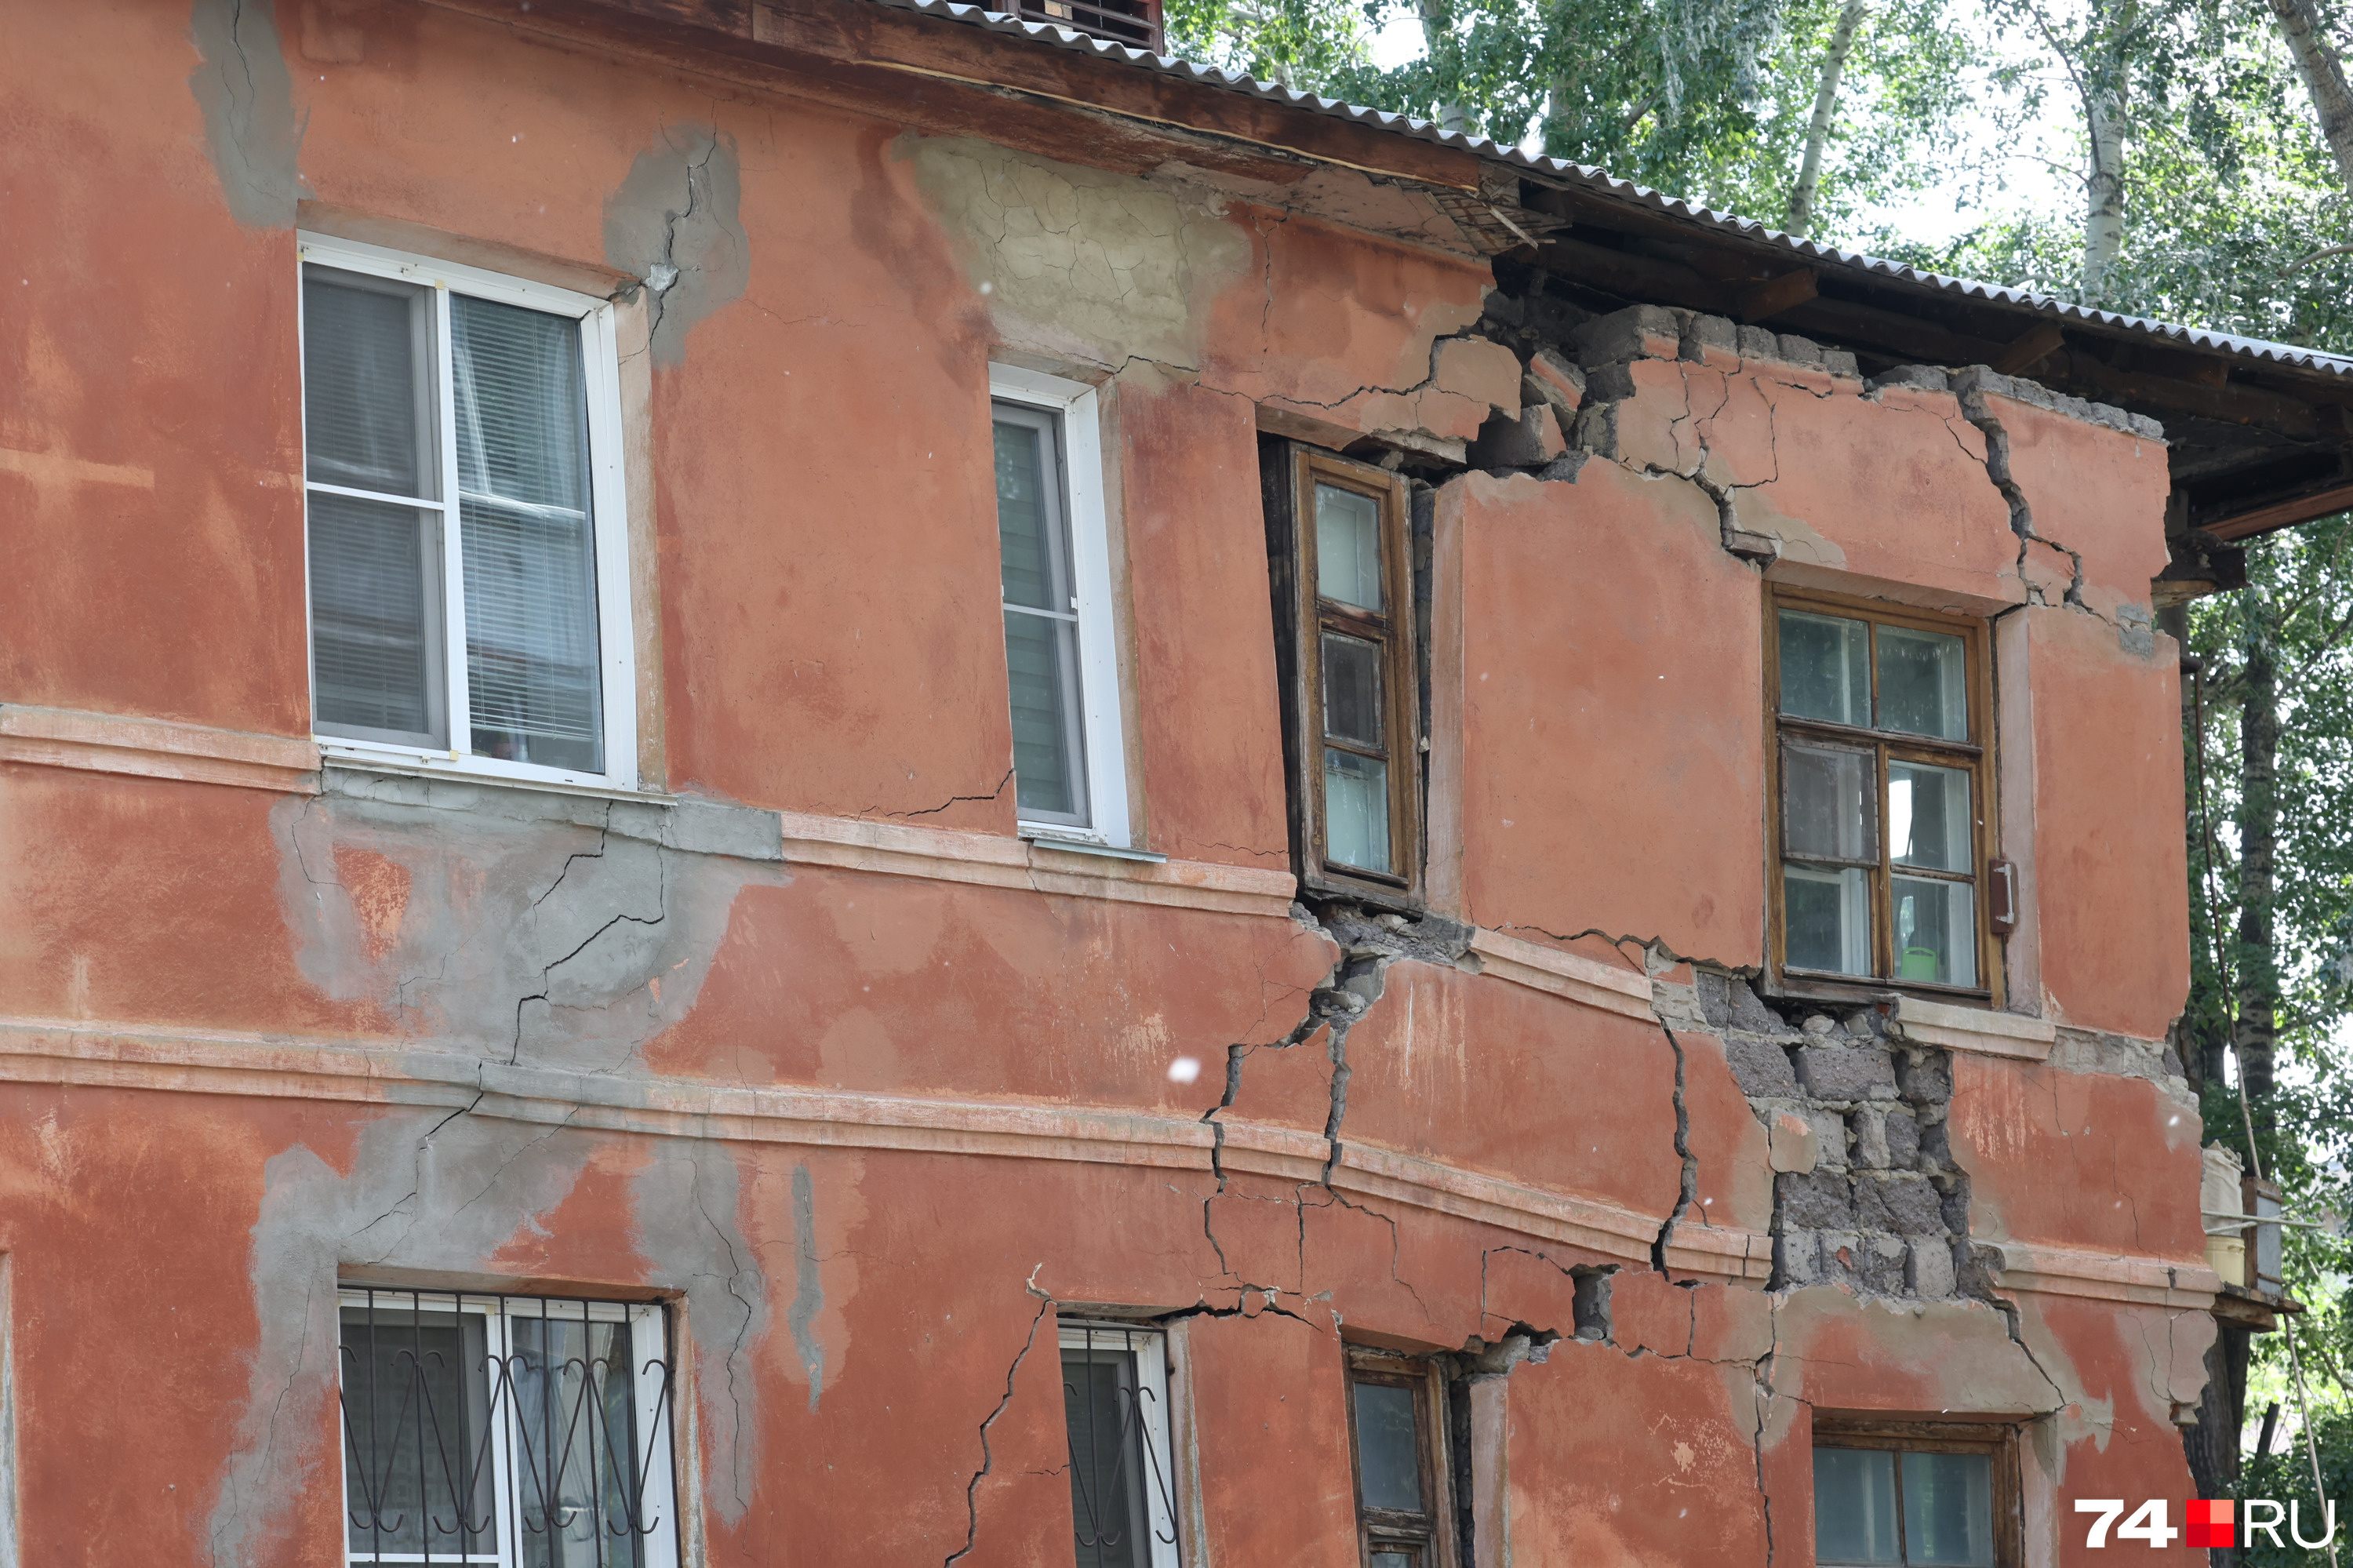 Рабочие вырыли траншею, и по стене дома пошли трещины, а сегодня утром один угол и вовсе обвалился